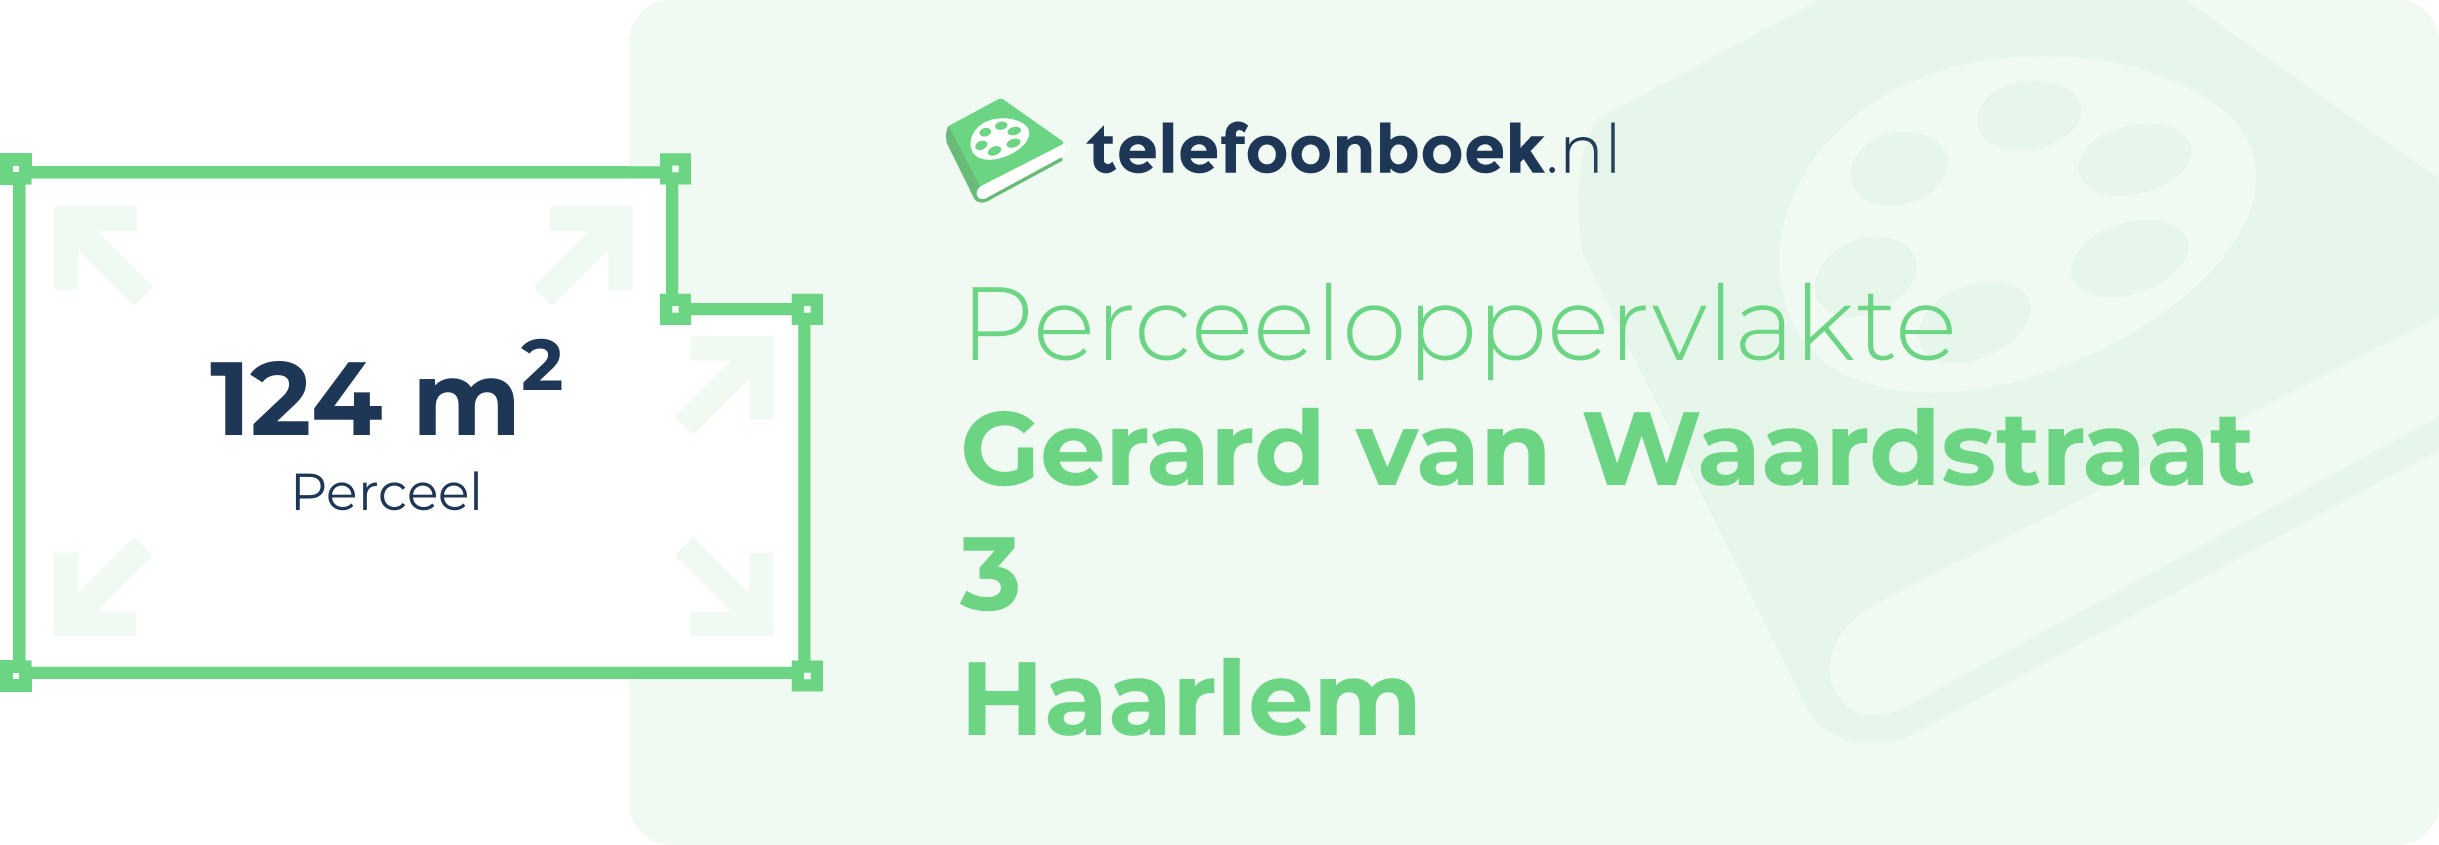 Perceeloppervlakte Gerard Van Waardstraat 3 Haarlem